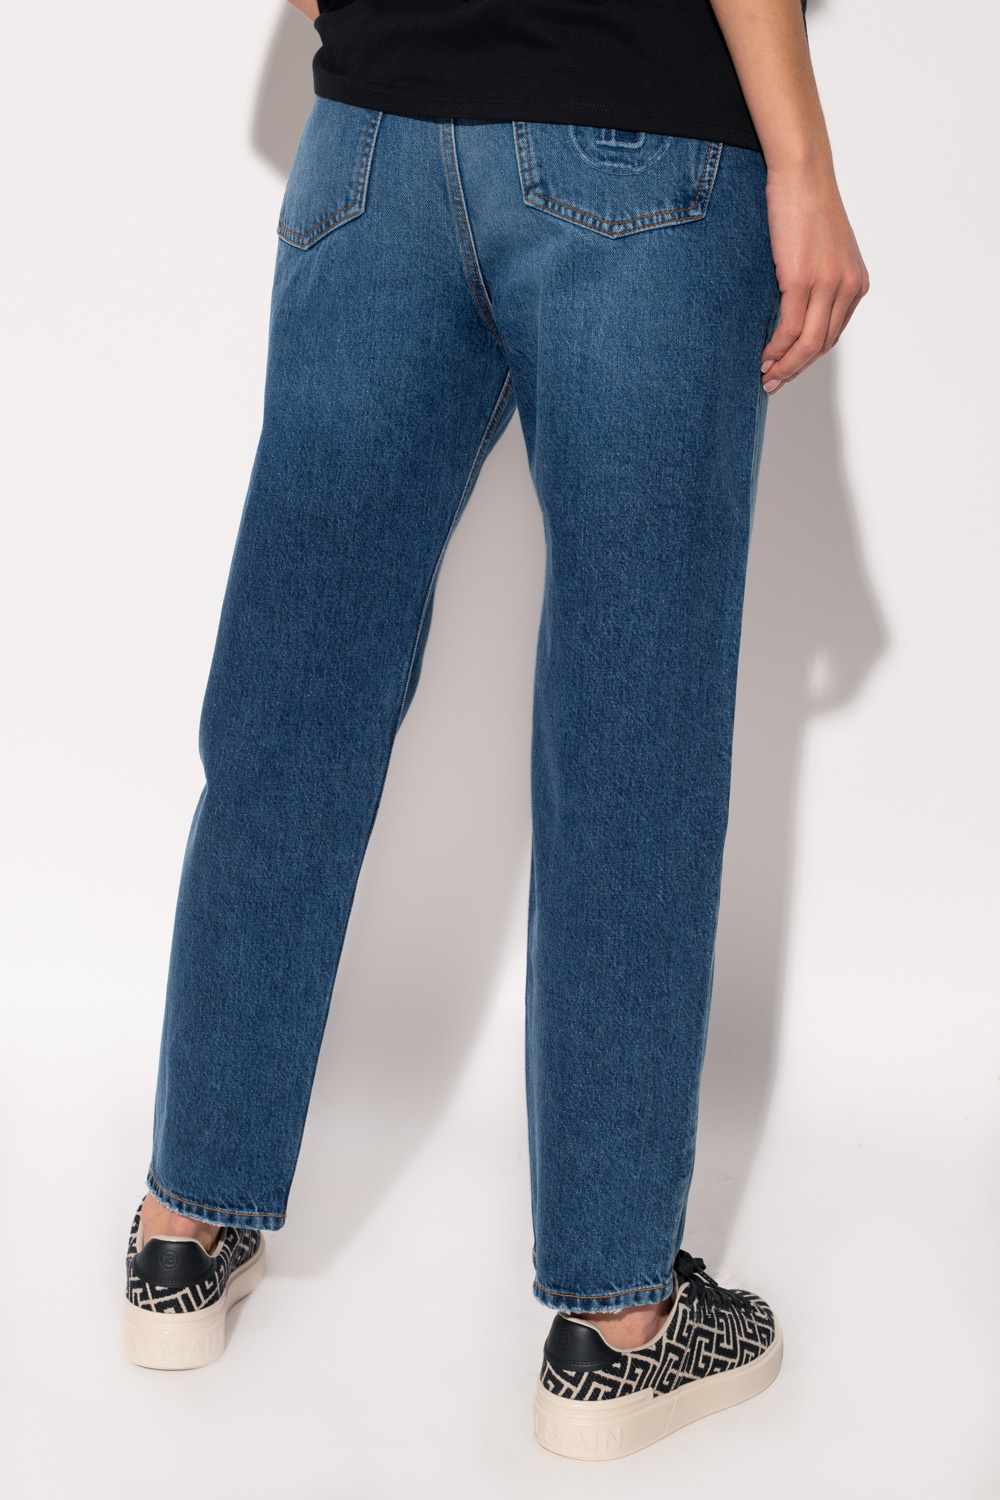 balmain amp High-waisted jeans